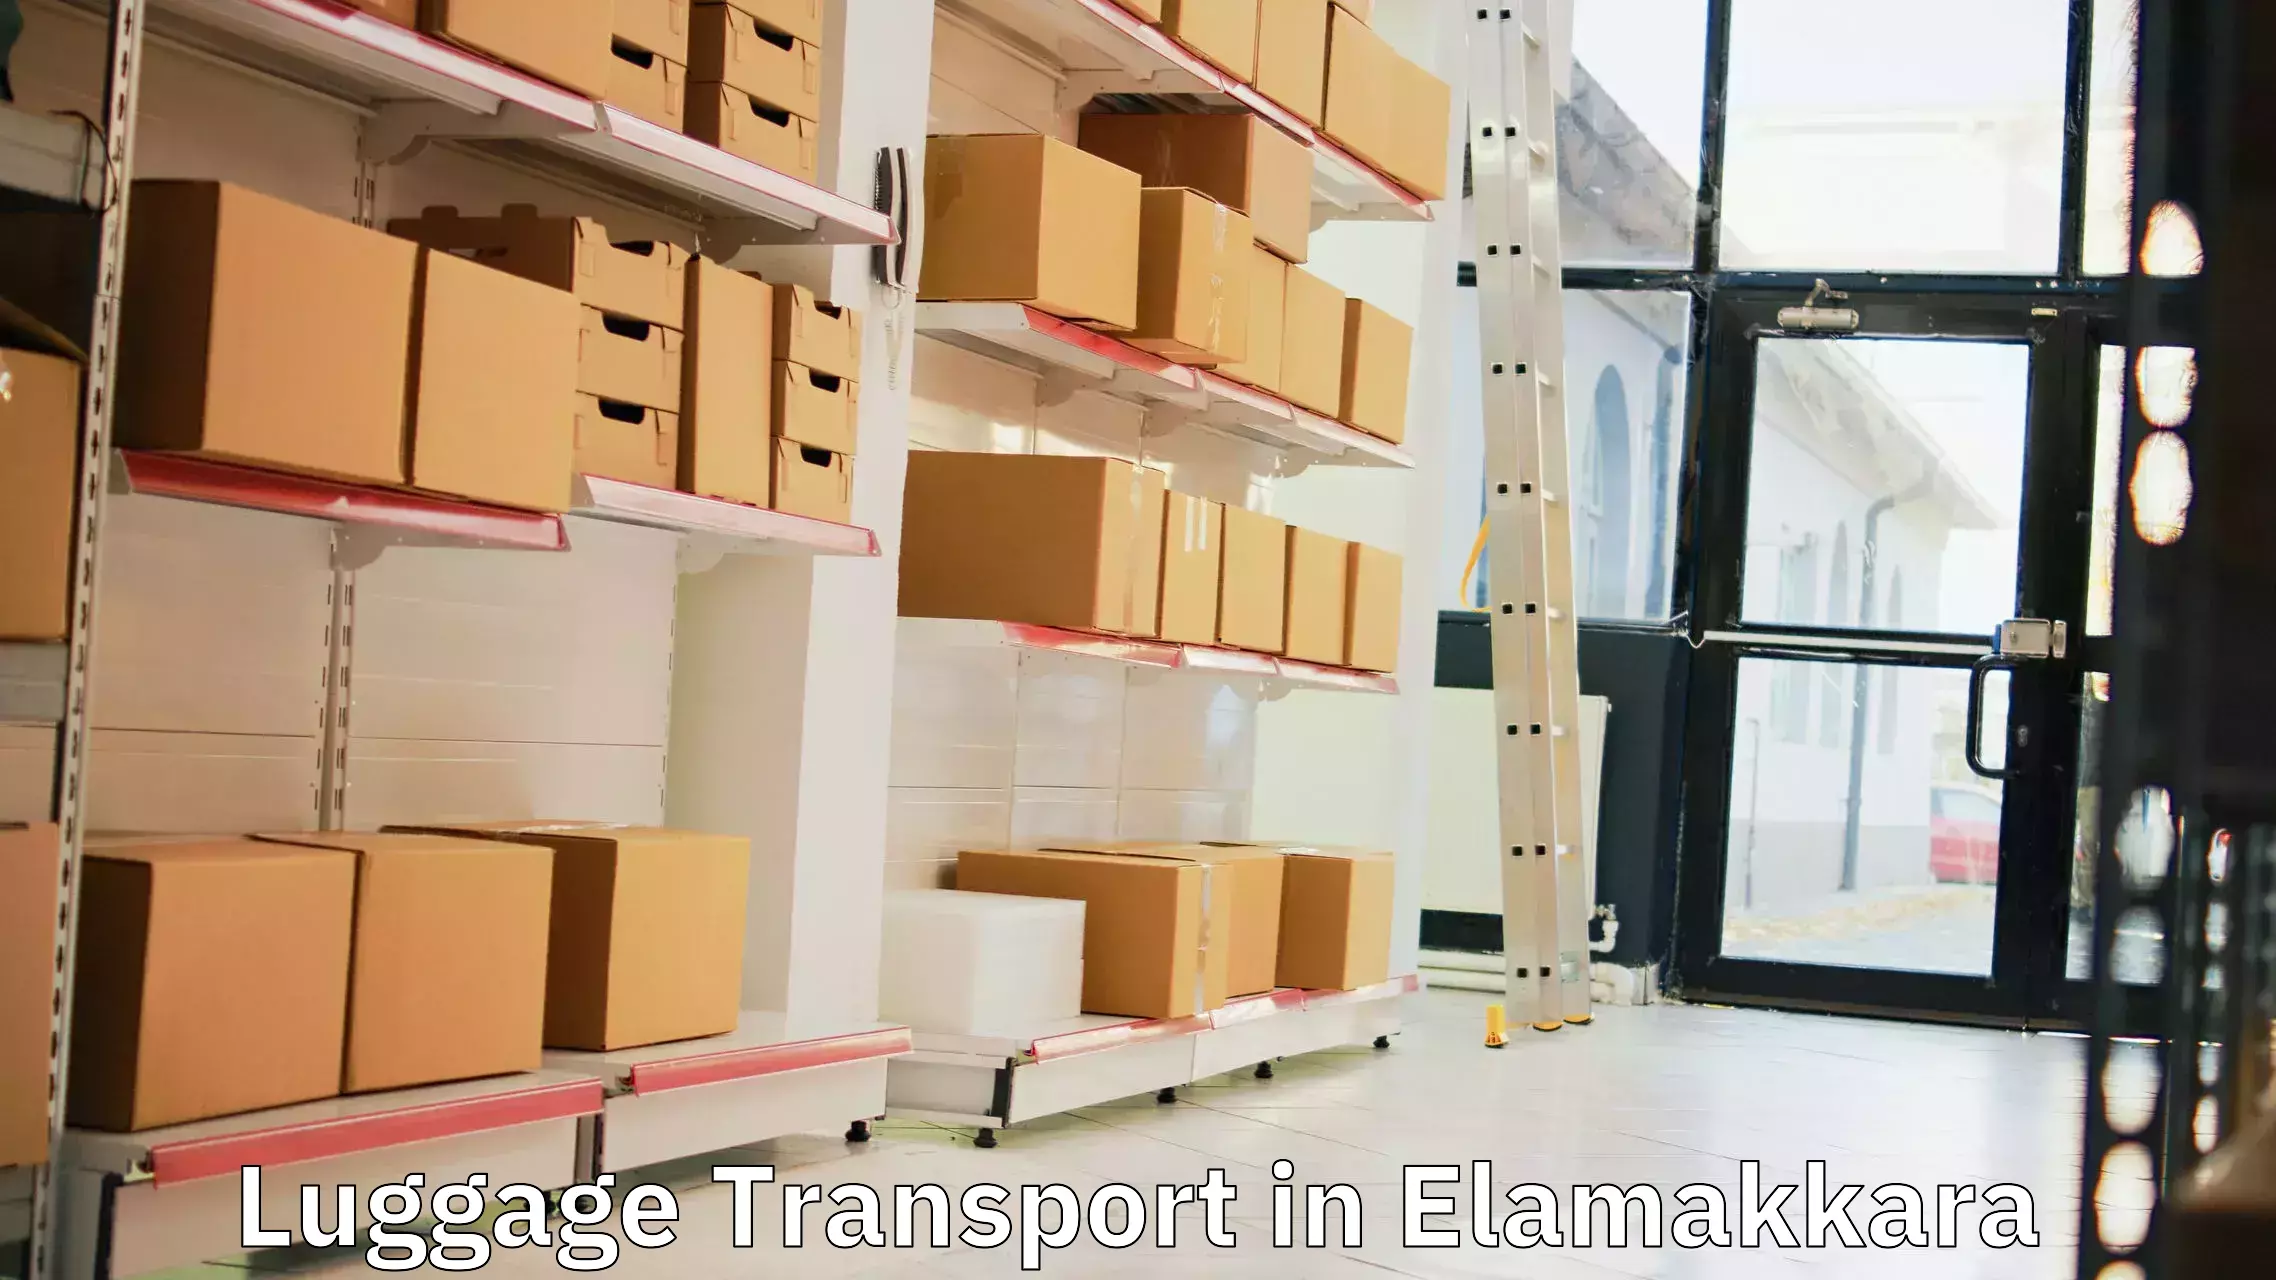 Express baggage shipping in Elamakkara